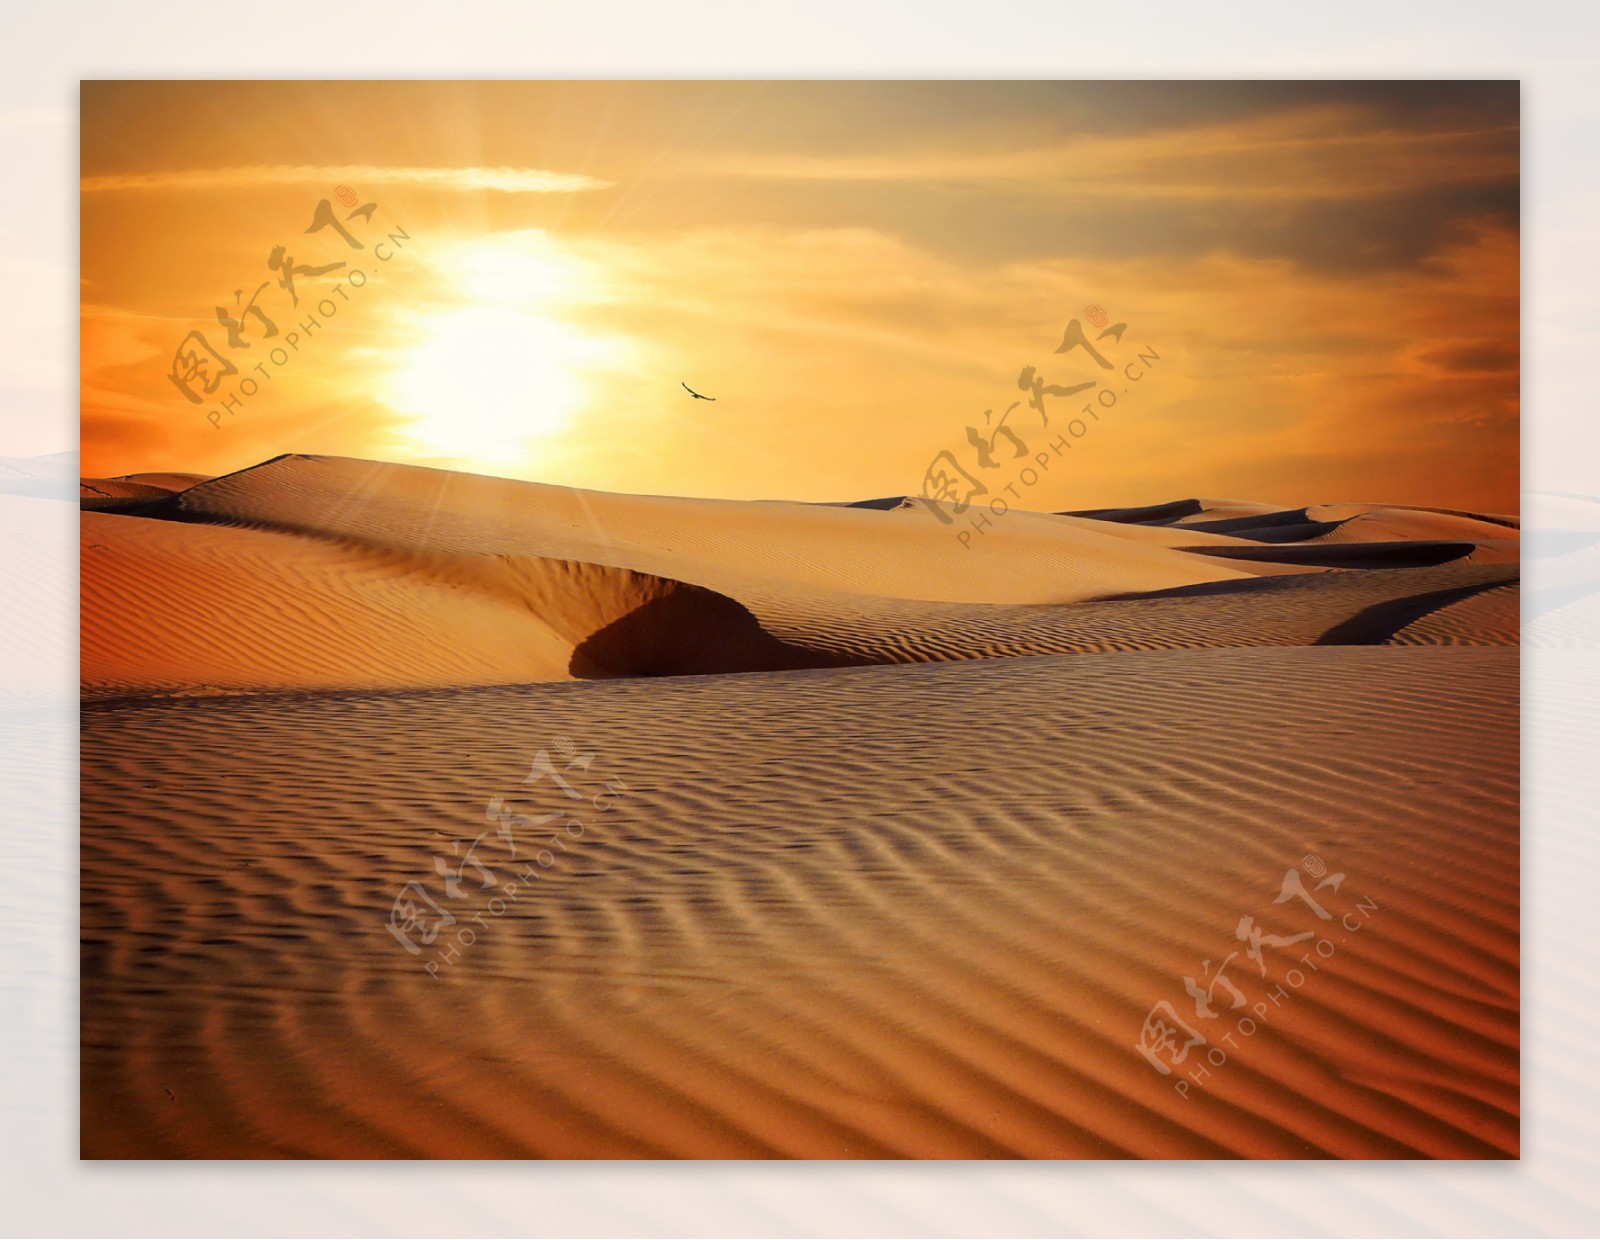 唯美沙漠夕阳风景图片